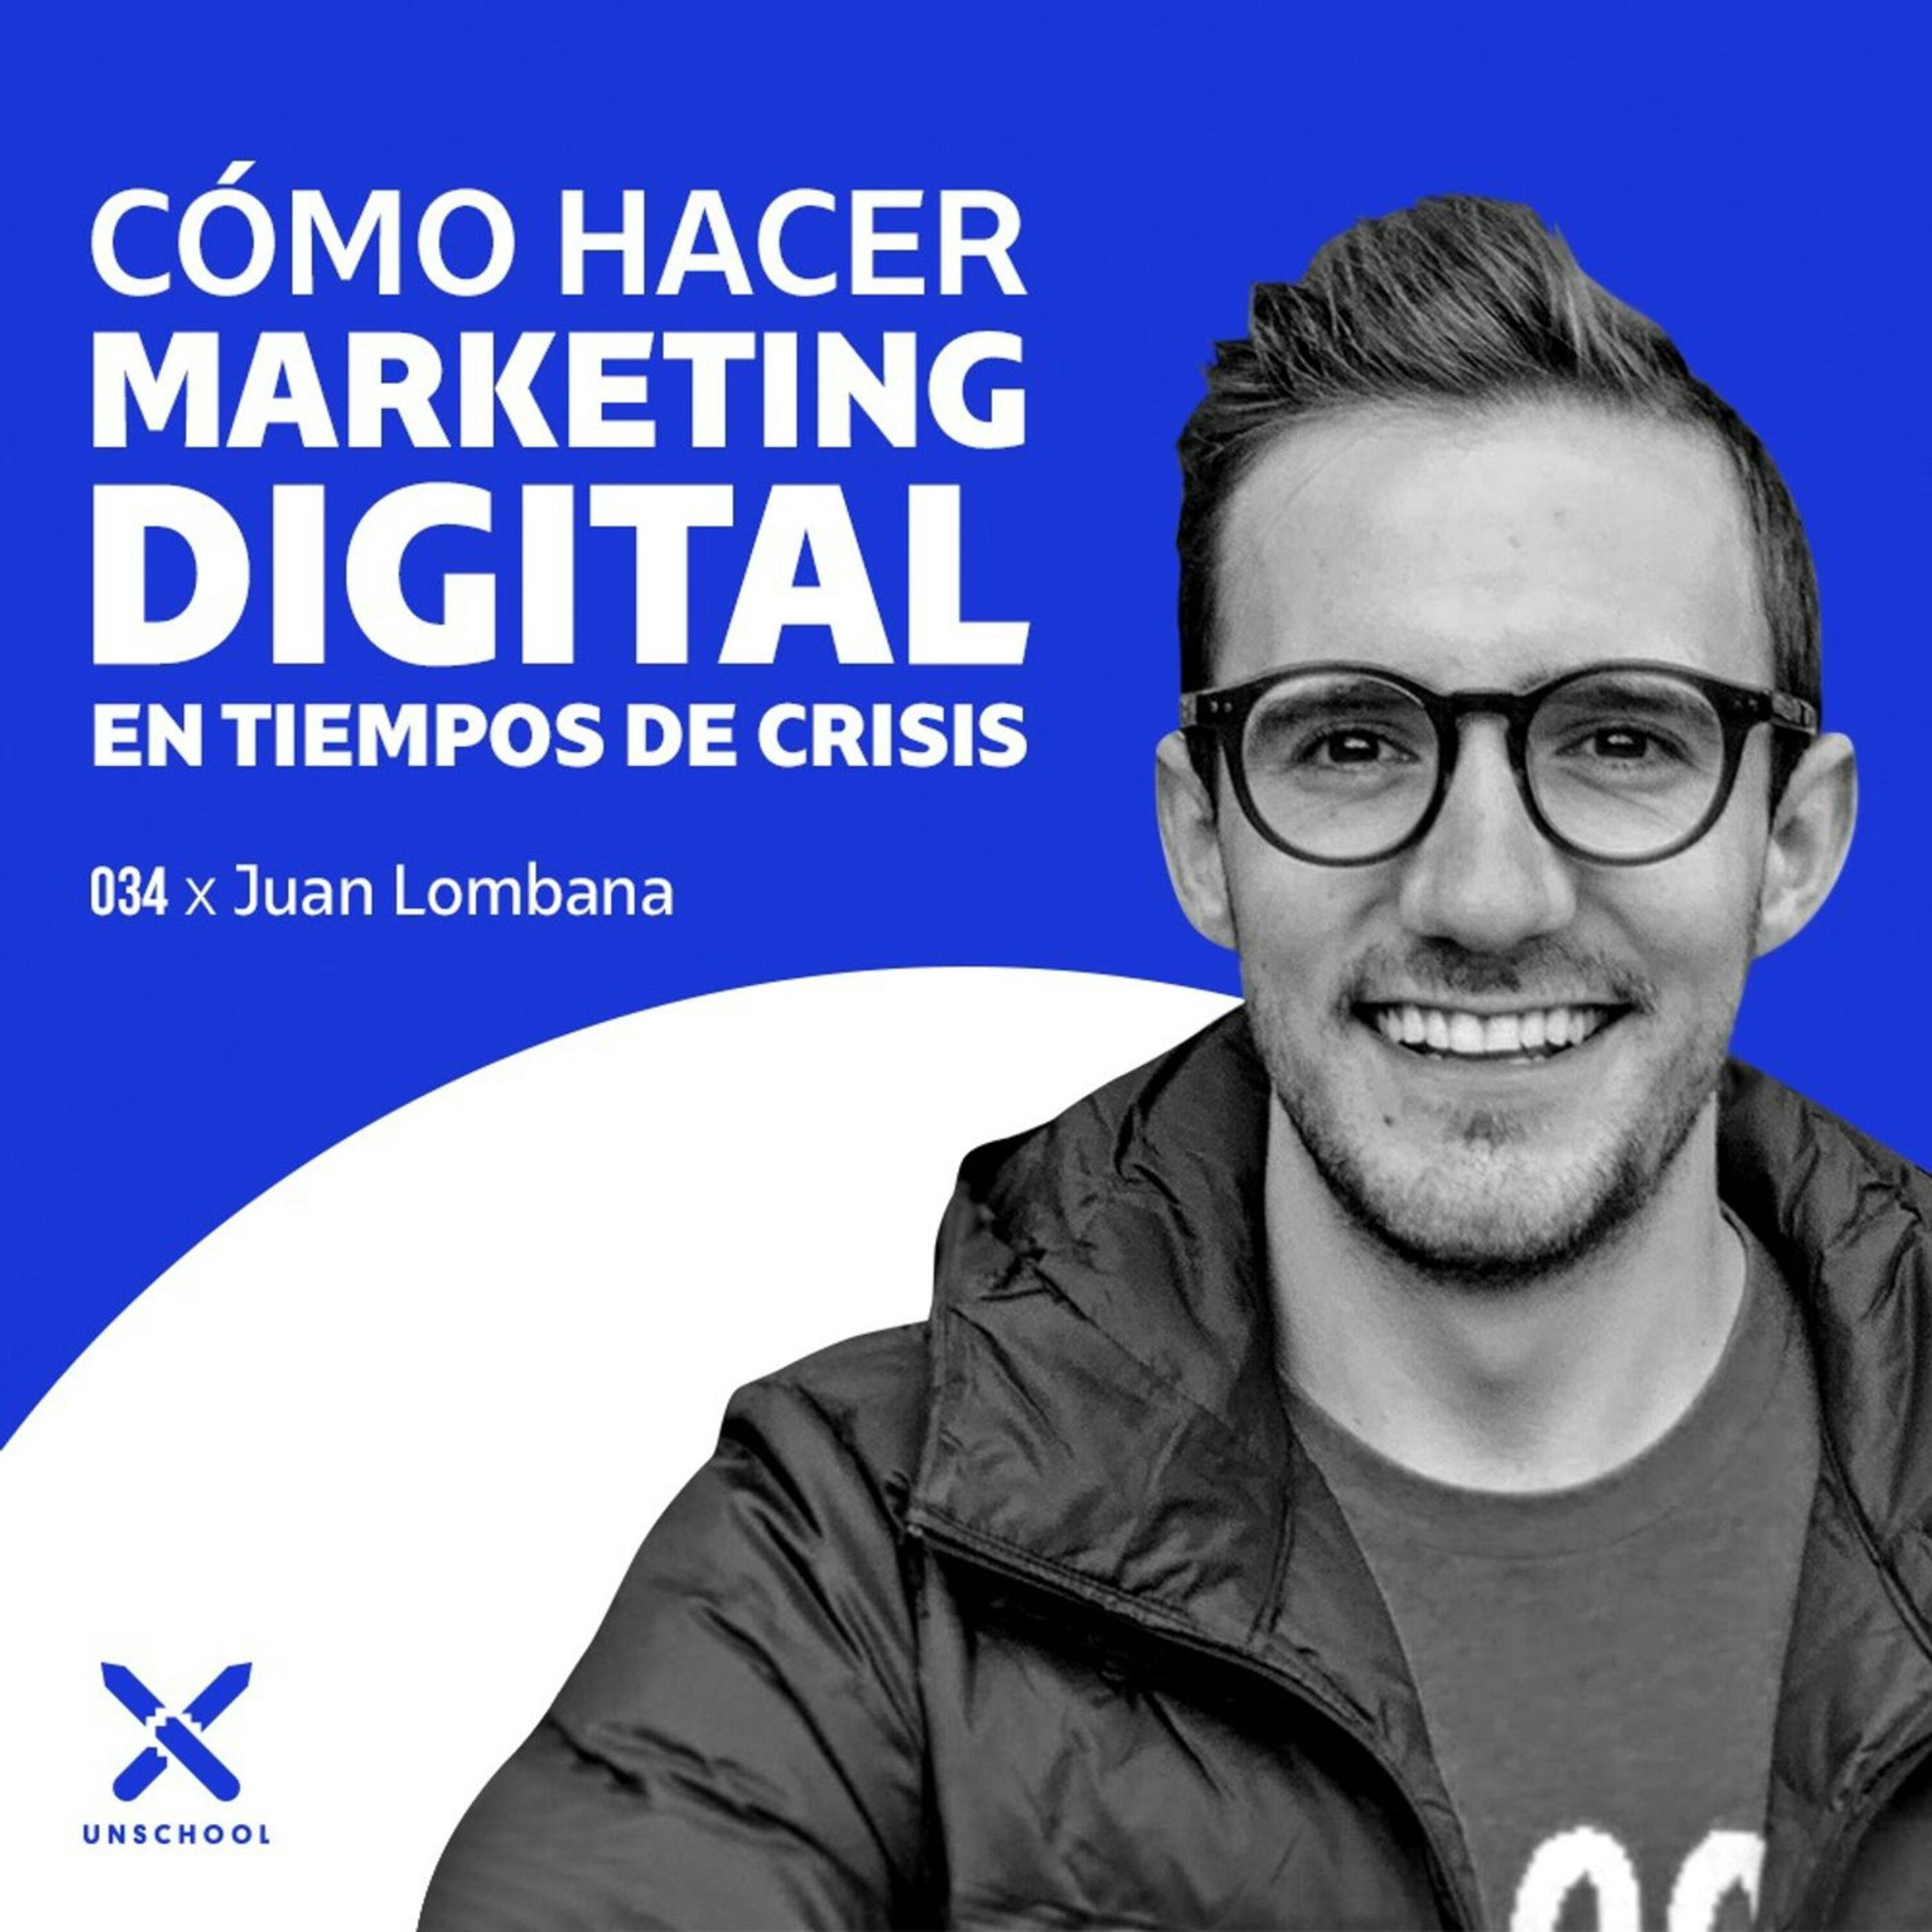 Cómo hacer marketing digital en tiempos de crisis | Juan Lombana | UNSCHOOL 034